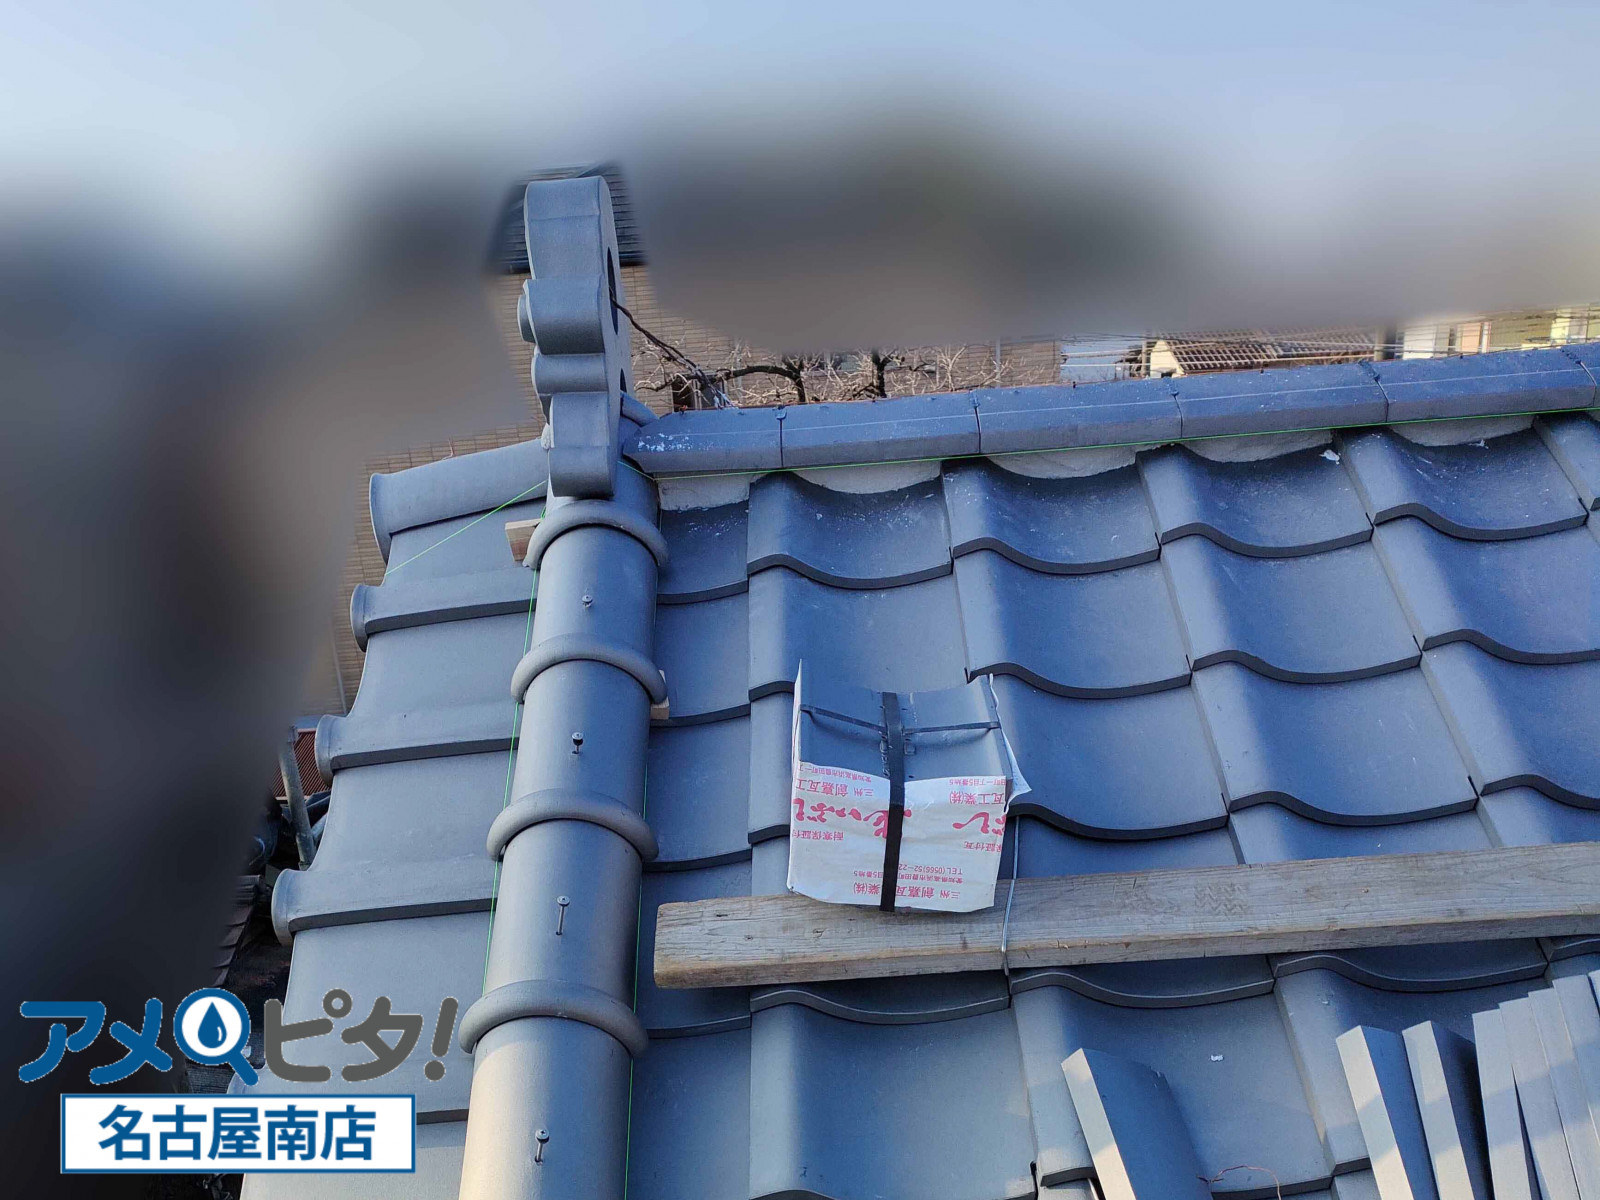 名古屋市南区にて和風瓦で入母屋屋根の鬼瓦と熨斗瓦の積み上げ手順と注意点について